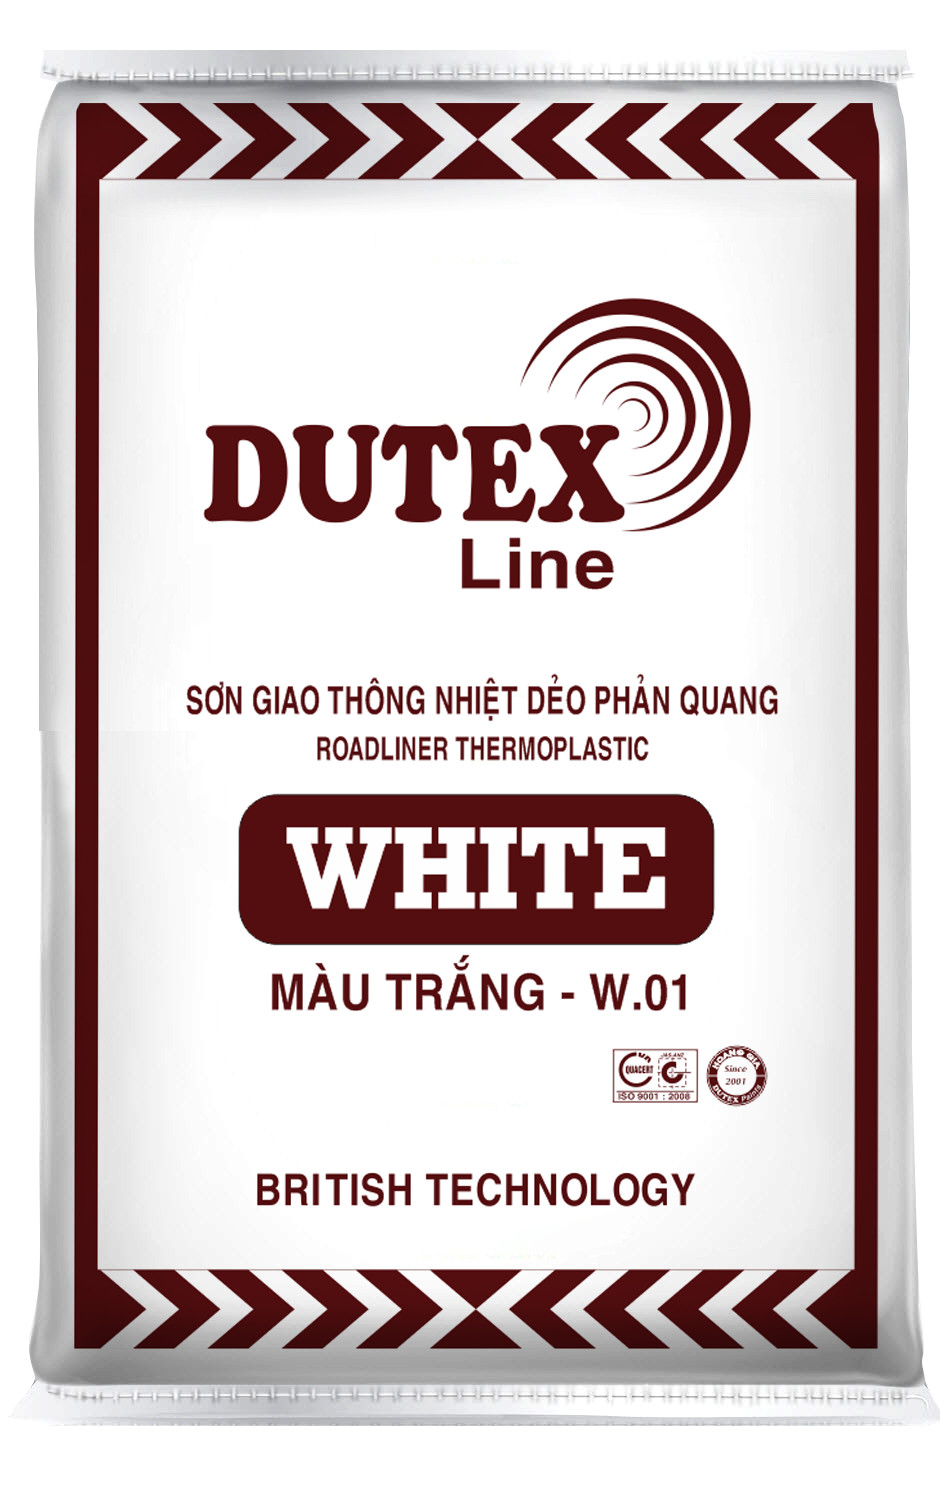 SƠN GIAO THÔNG NHIỆT DẺO PHẢN QUANG DUTEX LINE - WHITE W01